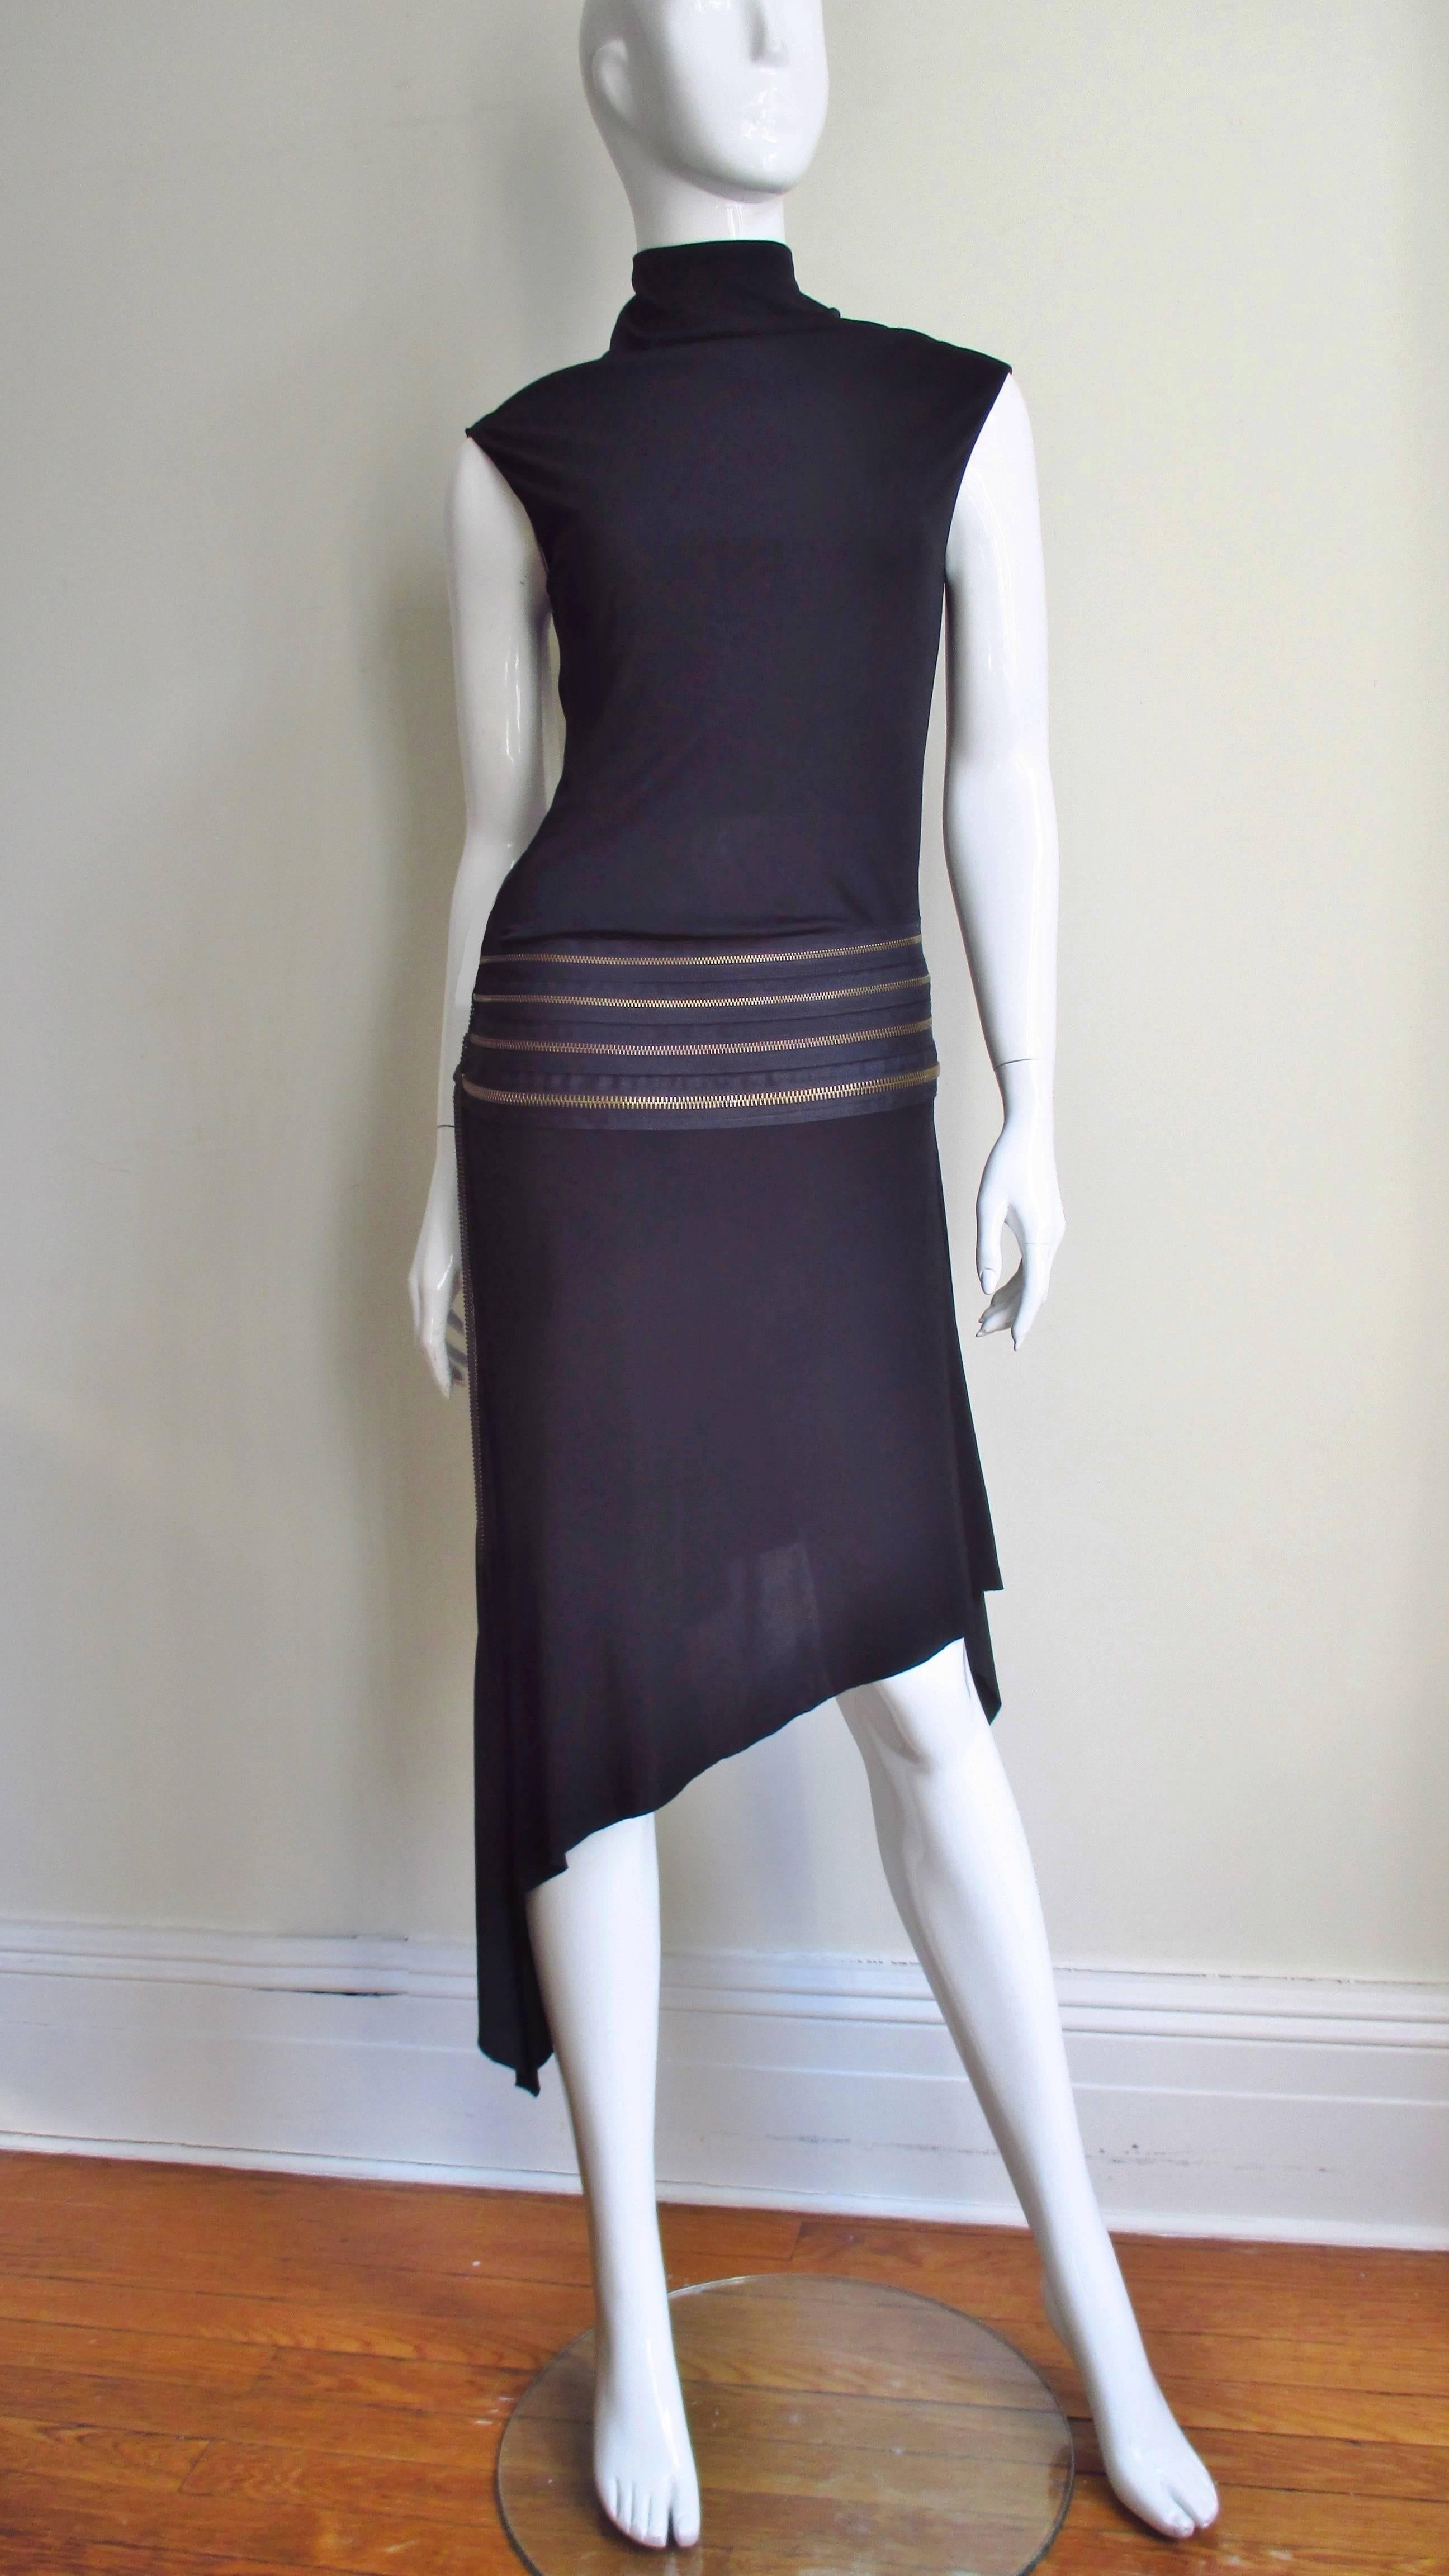 Black Jean Paul Gaultier Zipper Dress